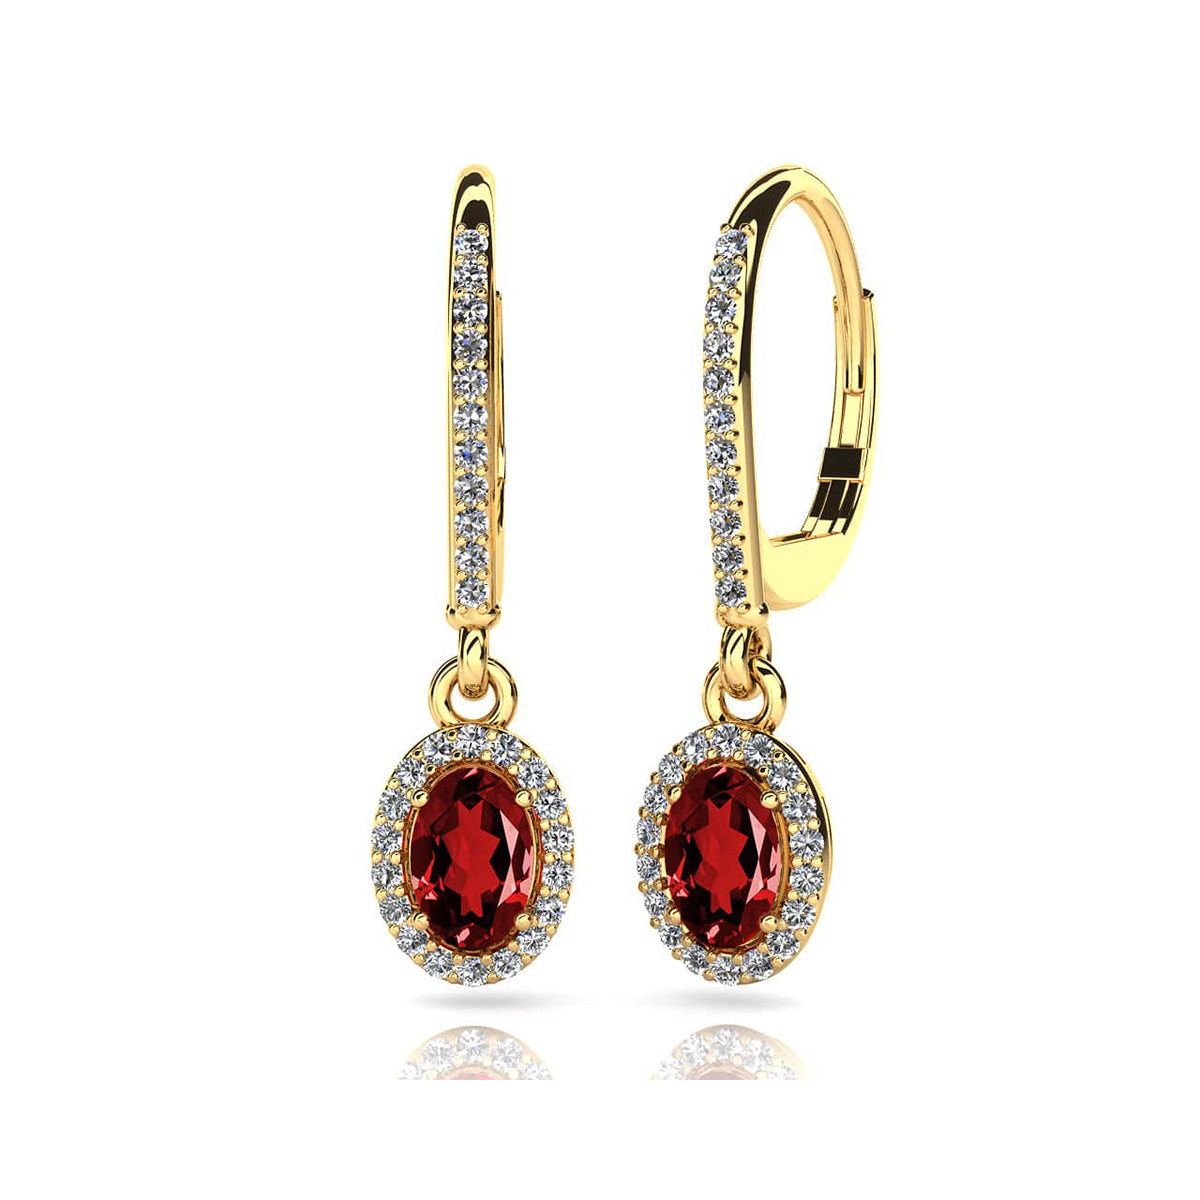 Oval Shaped Gemstone And Diamond Earrings